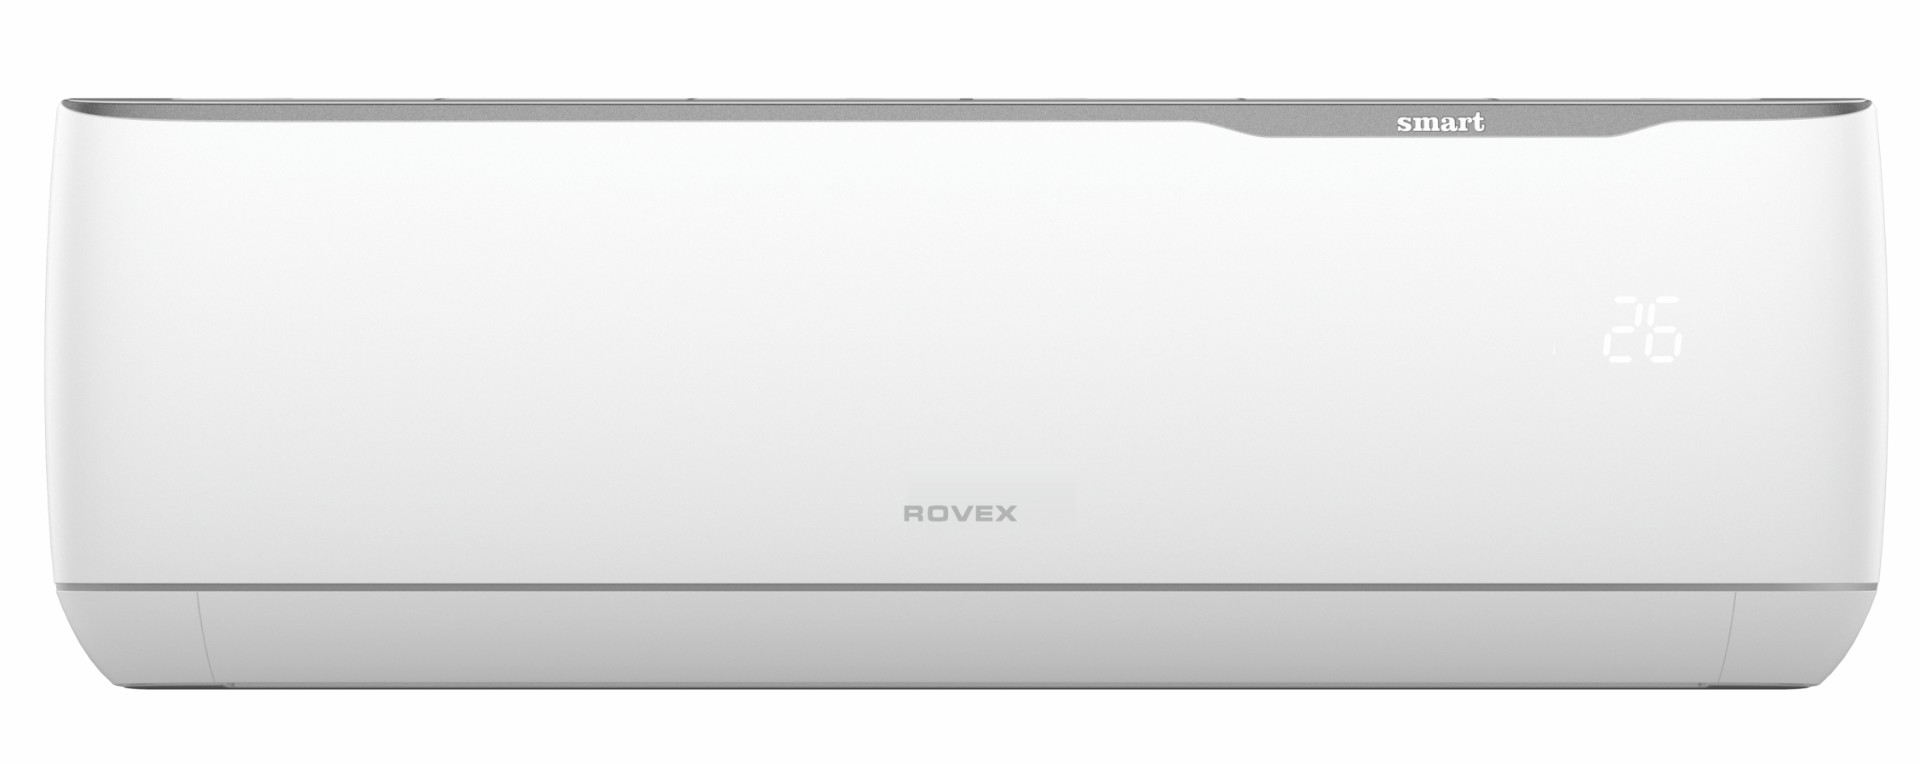 Изображение сплит-системы и установкой ROVEX RS-09PXS2 Smart